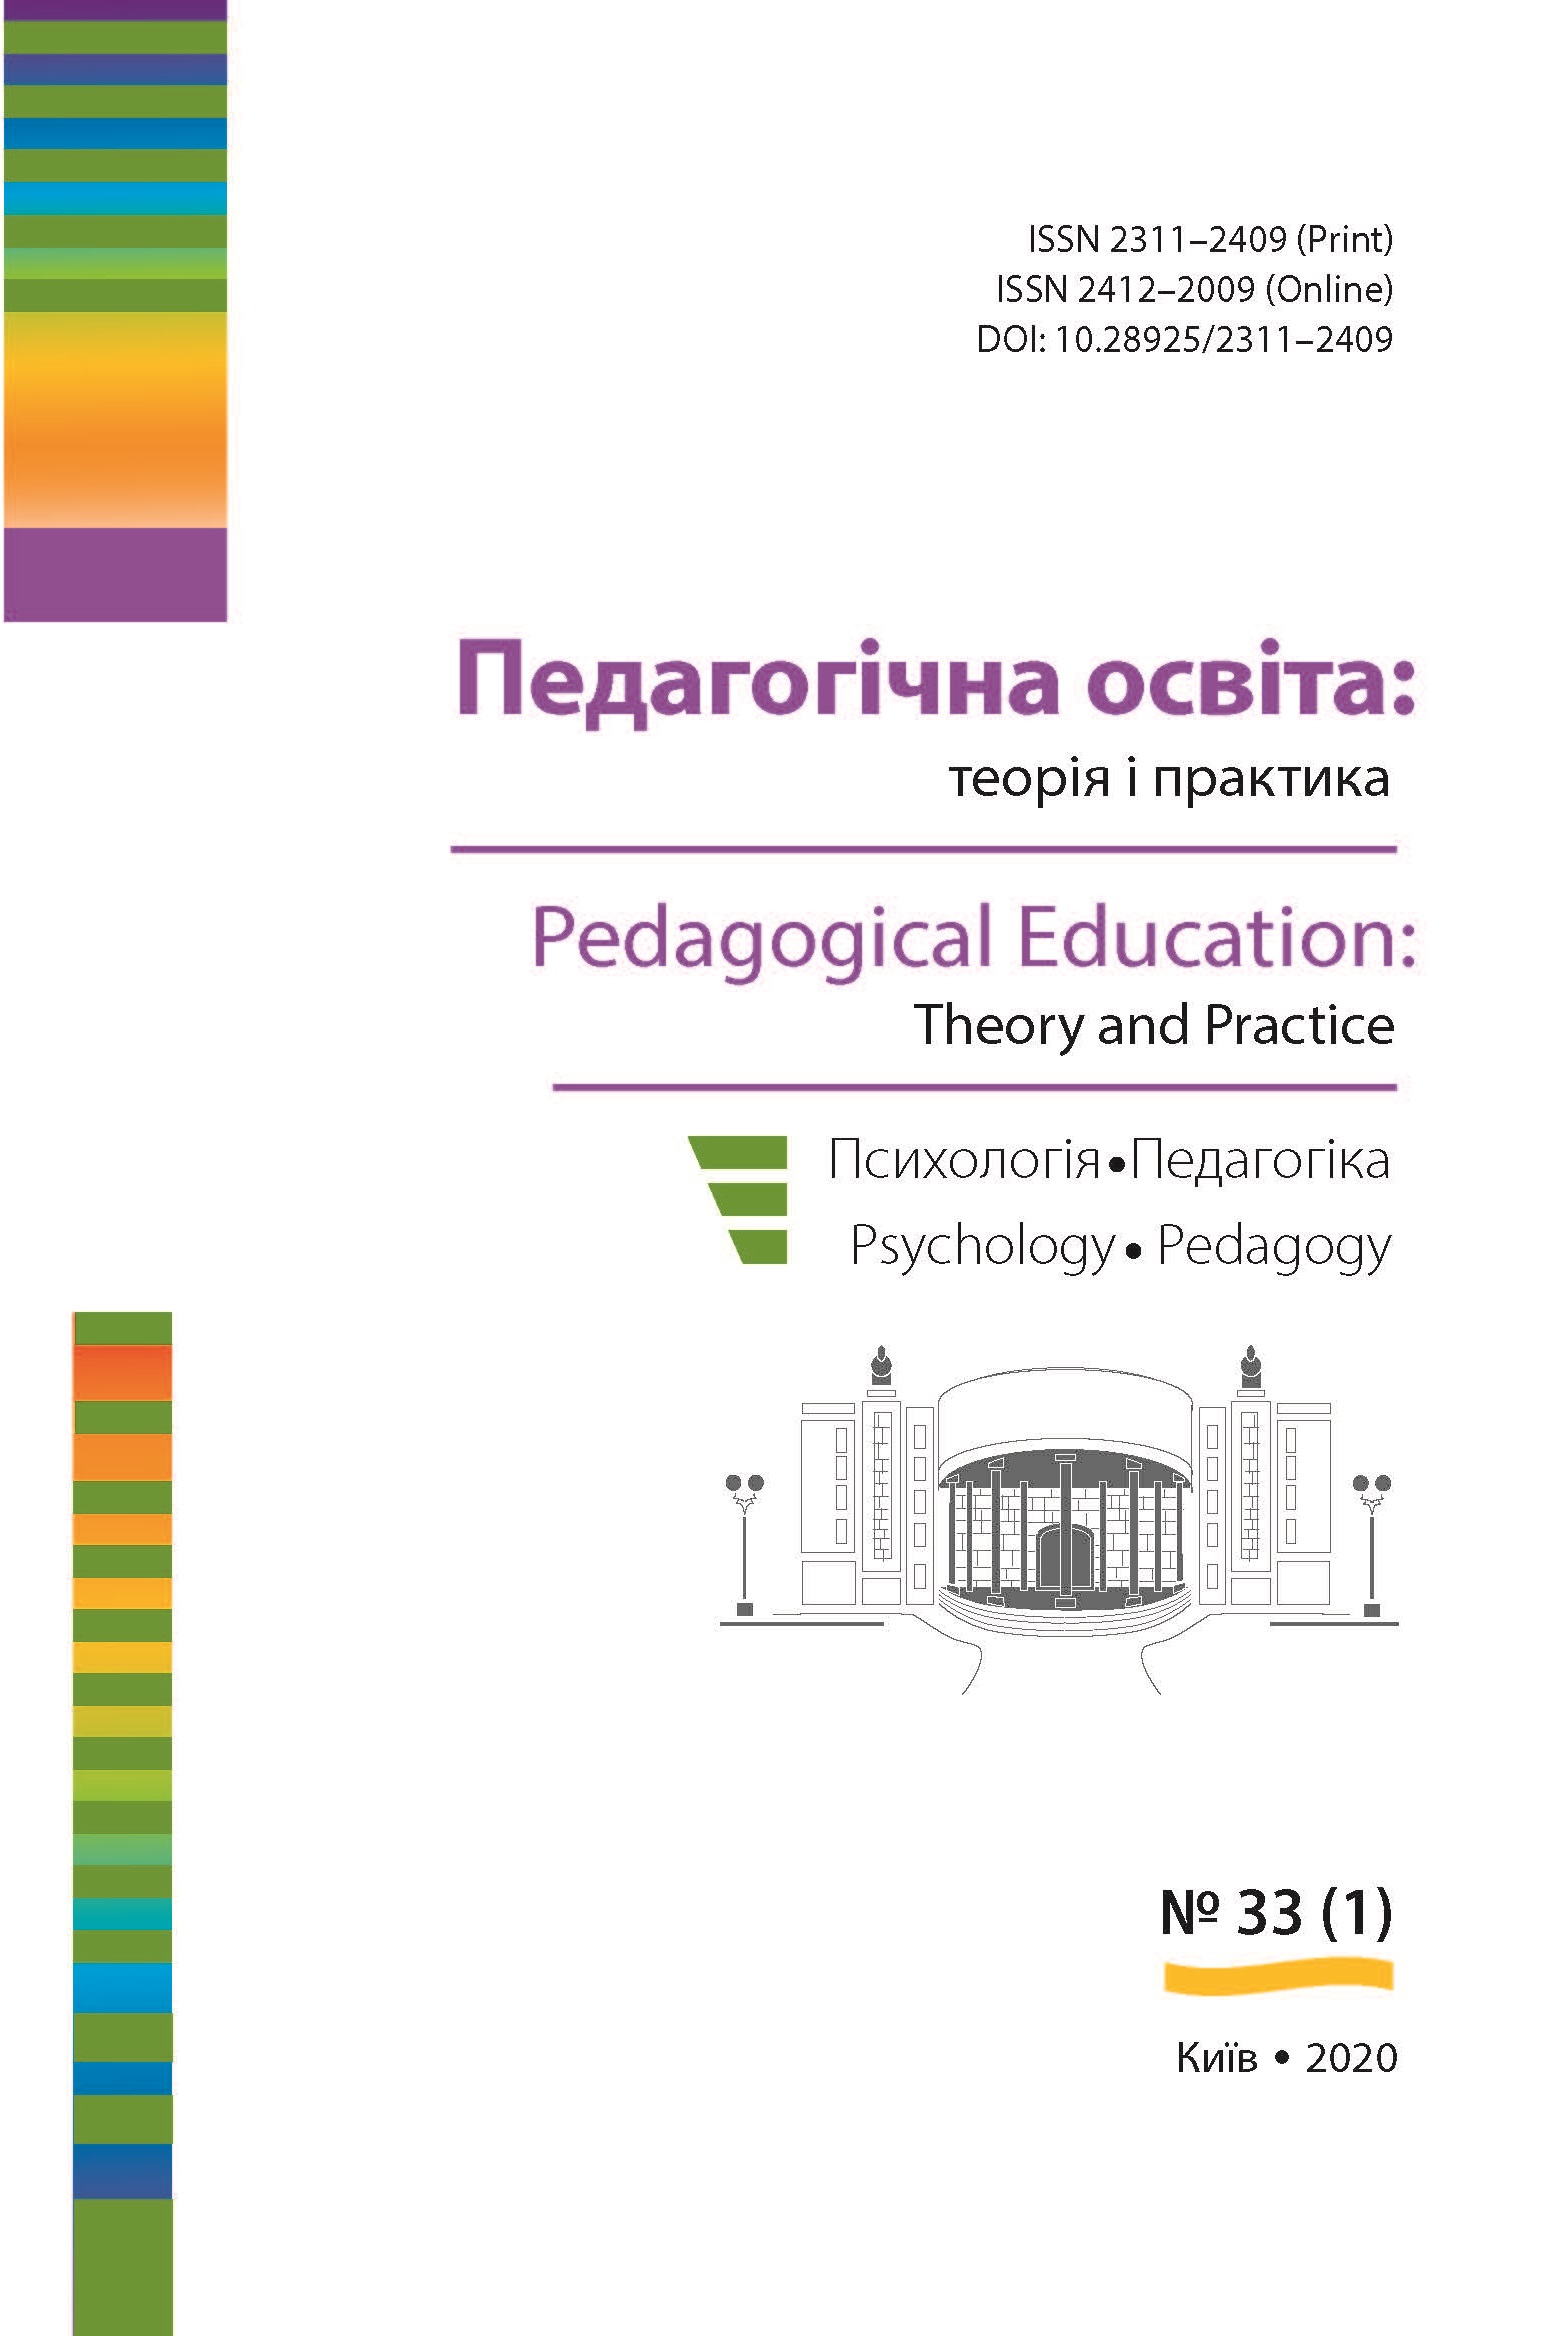 					View № 33 (2020): Педагогічна освіта:теорія і практика. Психологія. Педагогіка. 
				